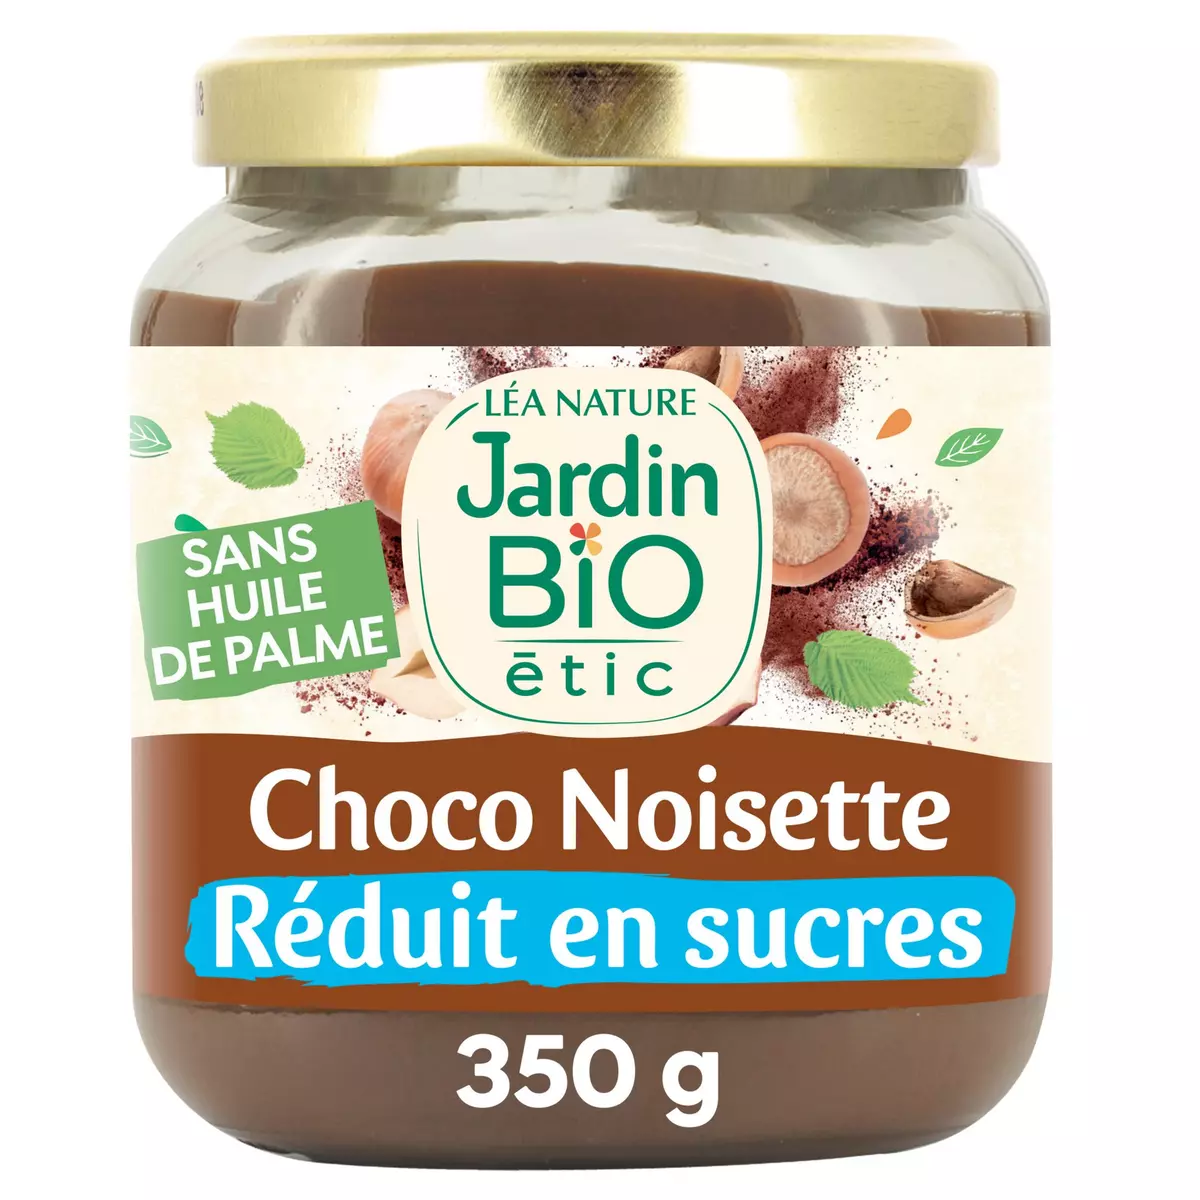 JARDIN BIO ETIC Pâte à tartiner chocolat noisette réduit en sucres 350g